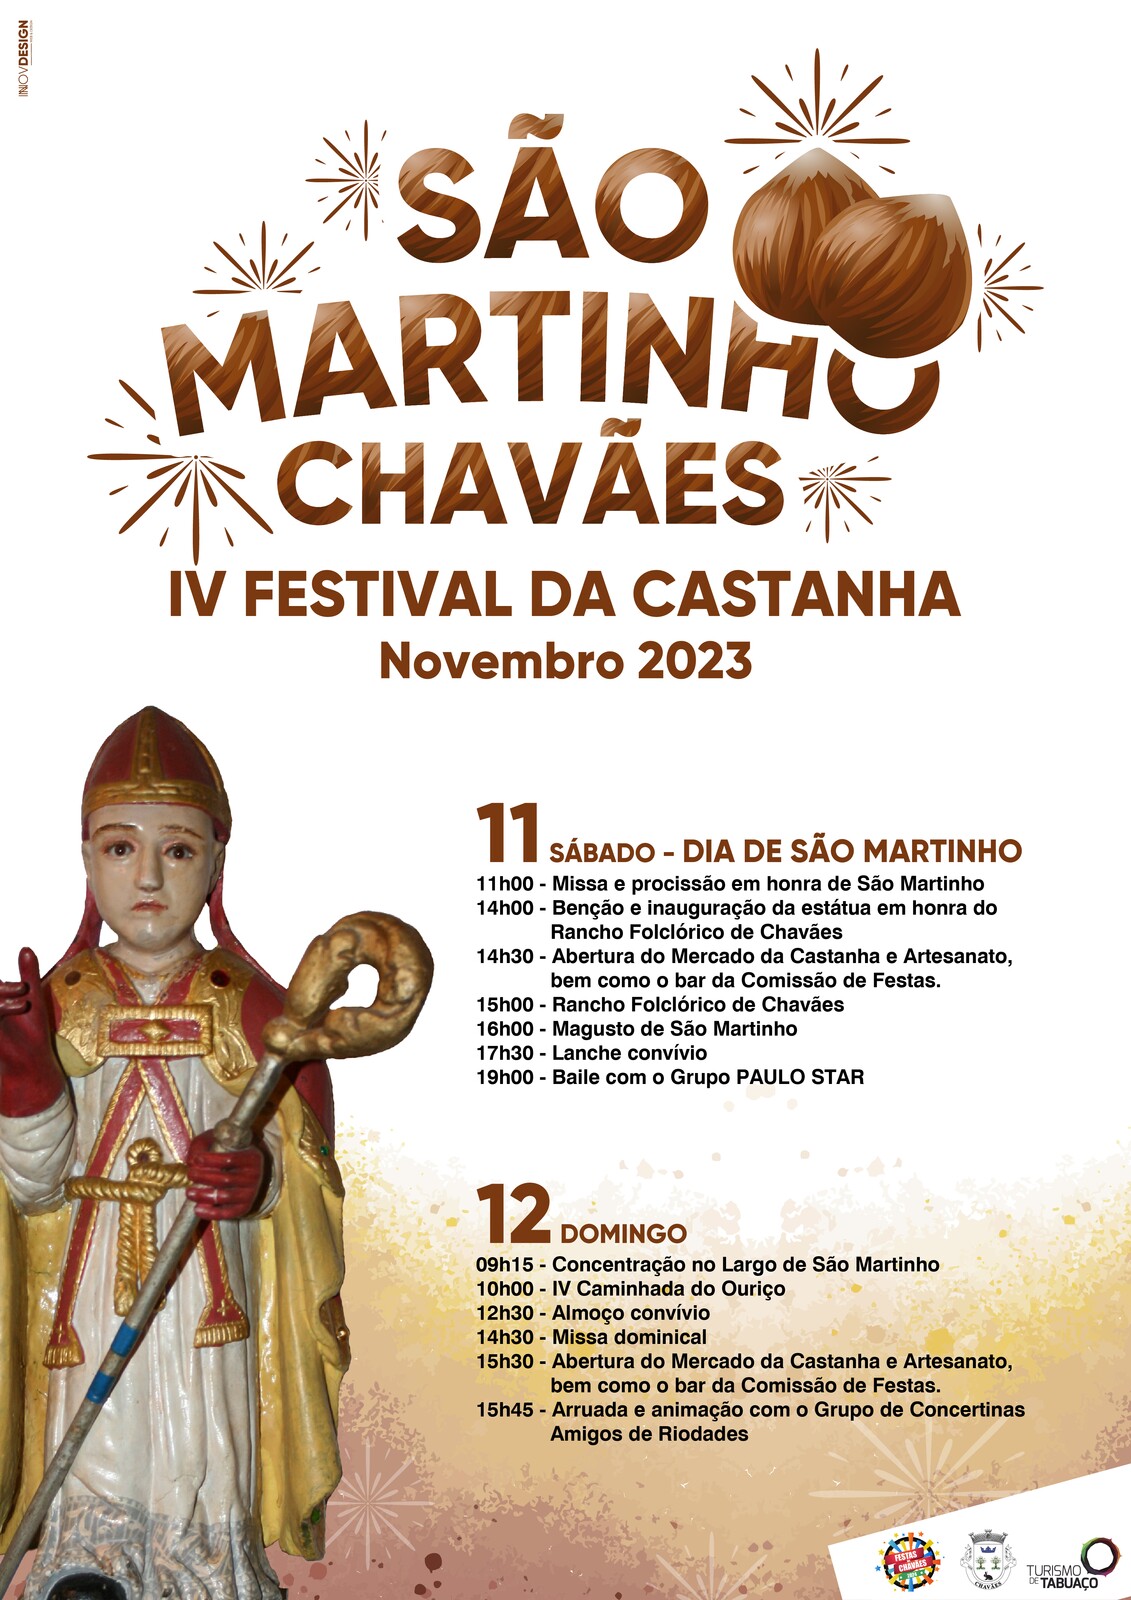 SÃO MARTINHO CHAVÃES - IV FESTIVAL DA CASTANHA